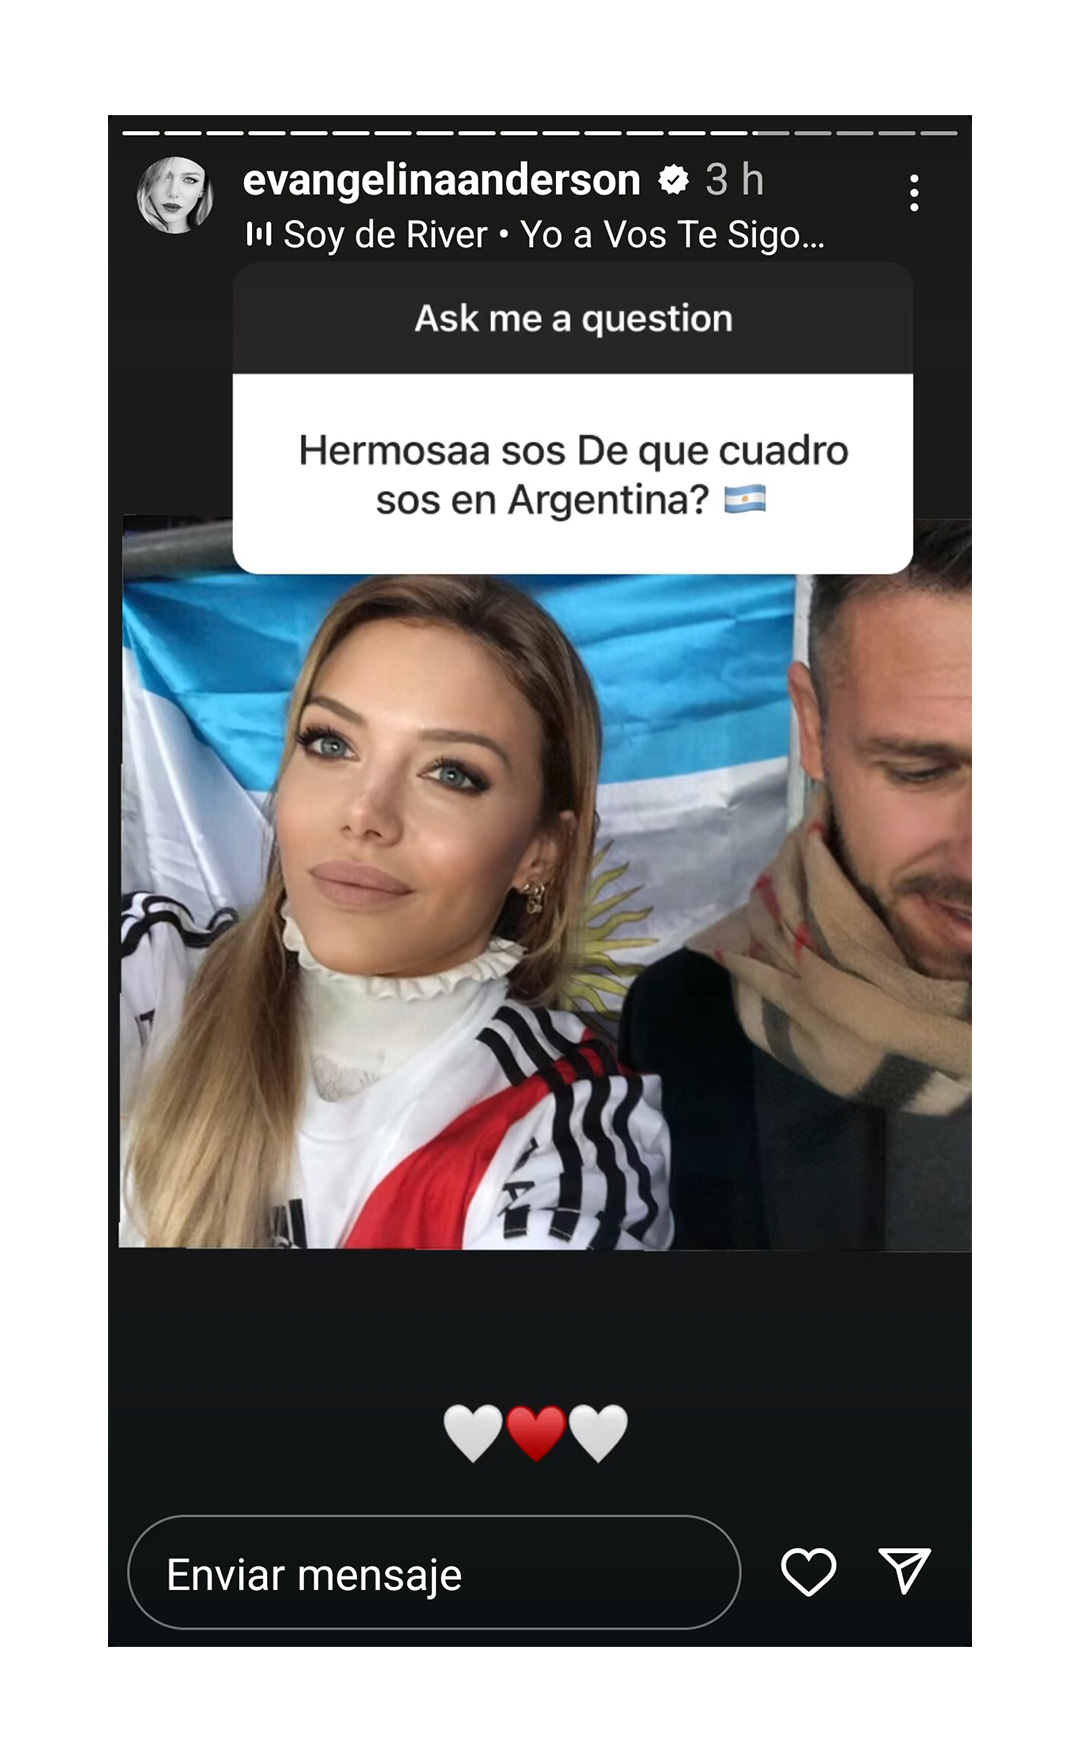 Evangelina contó en Instagram que es fanática de River Plate, club en el que jugó Martín Demichelis